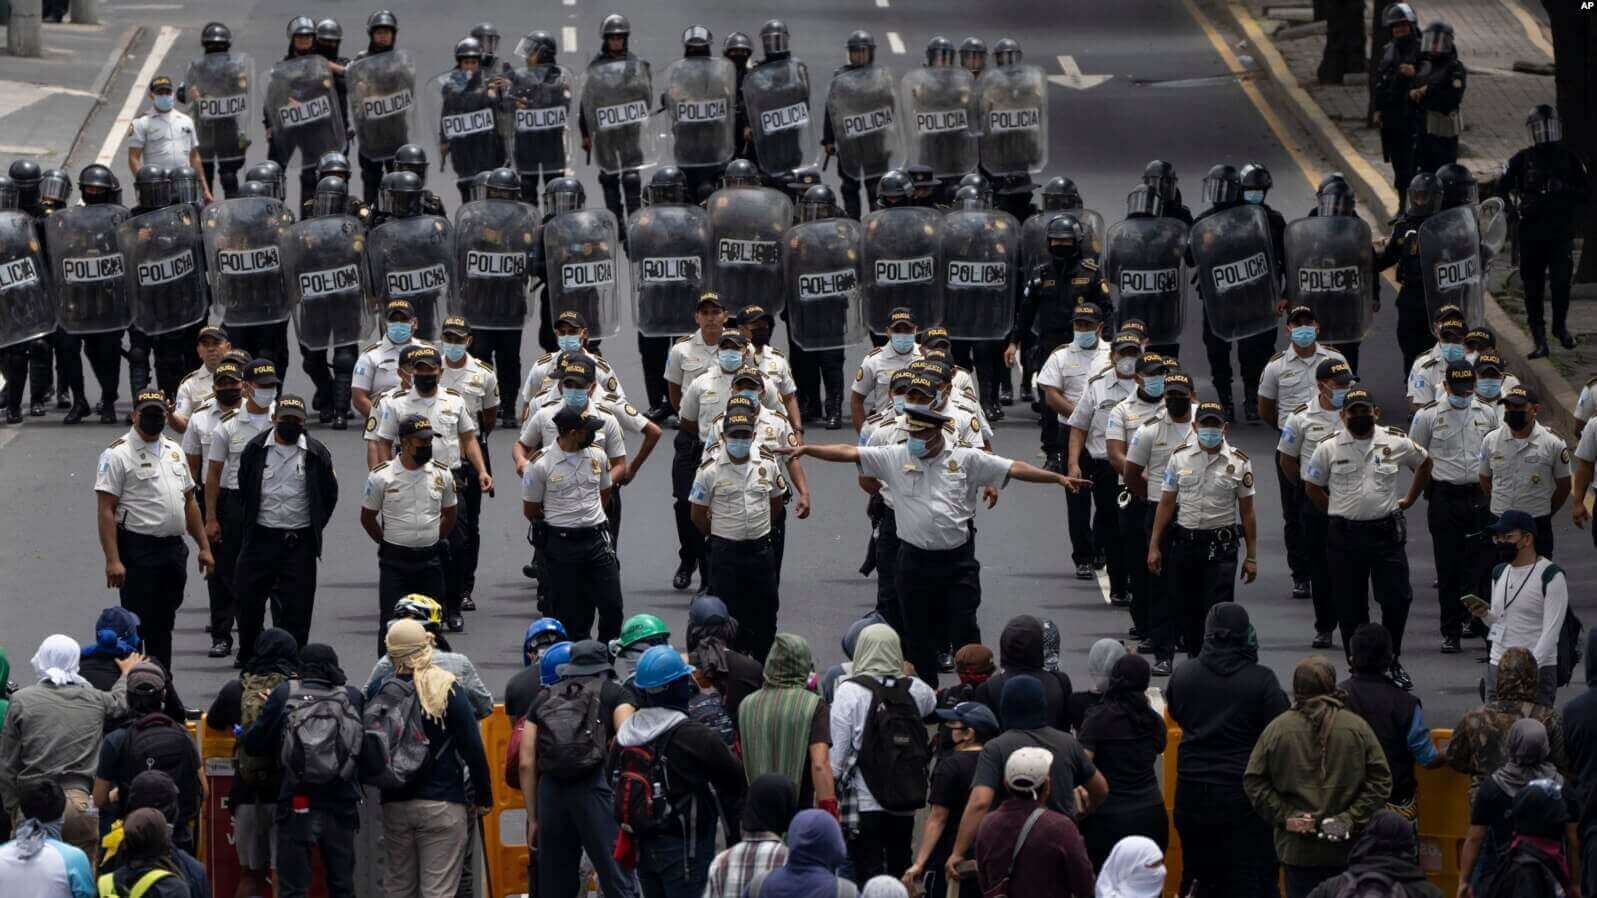 La policía trata de despejar una avenida bloqueada por estudiantes universitarios durante una protesta en la Ciudad de Guatemala el 9 de agosto de 2022. Foto AP.